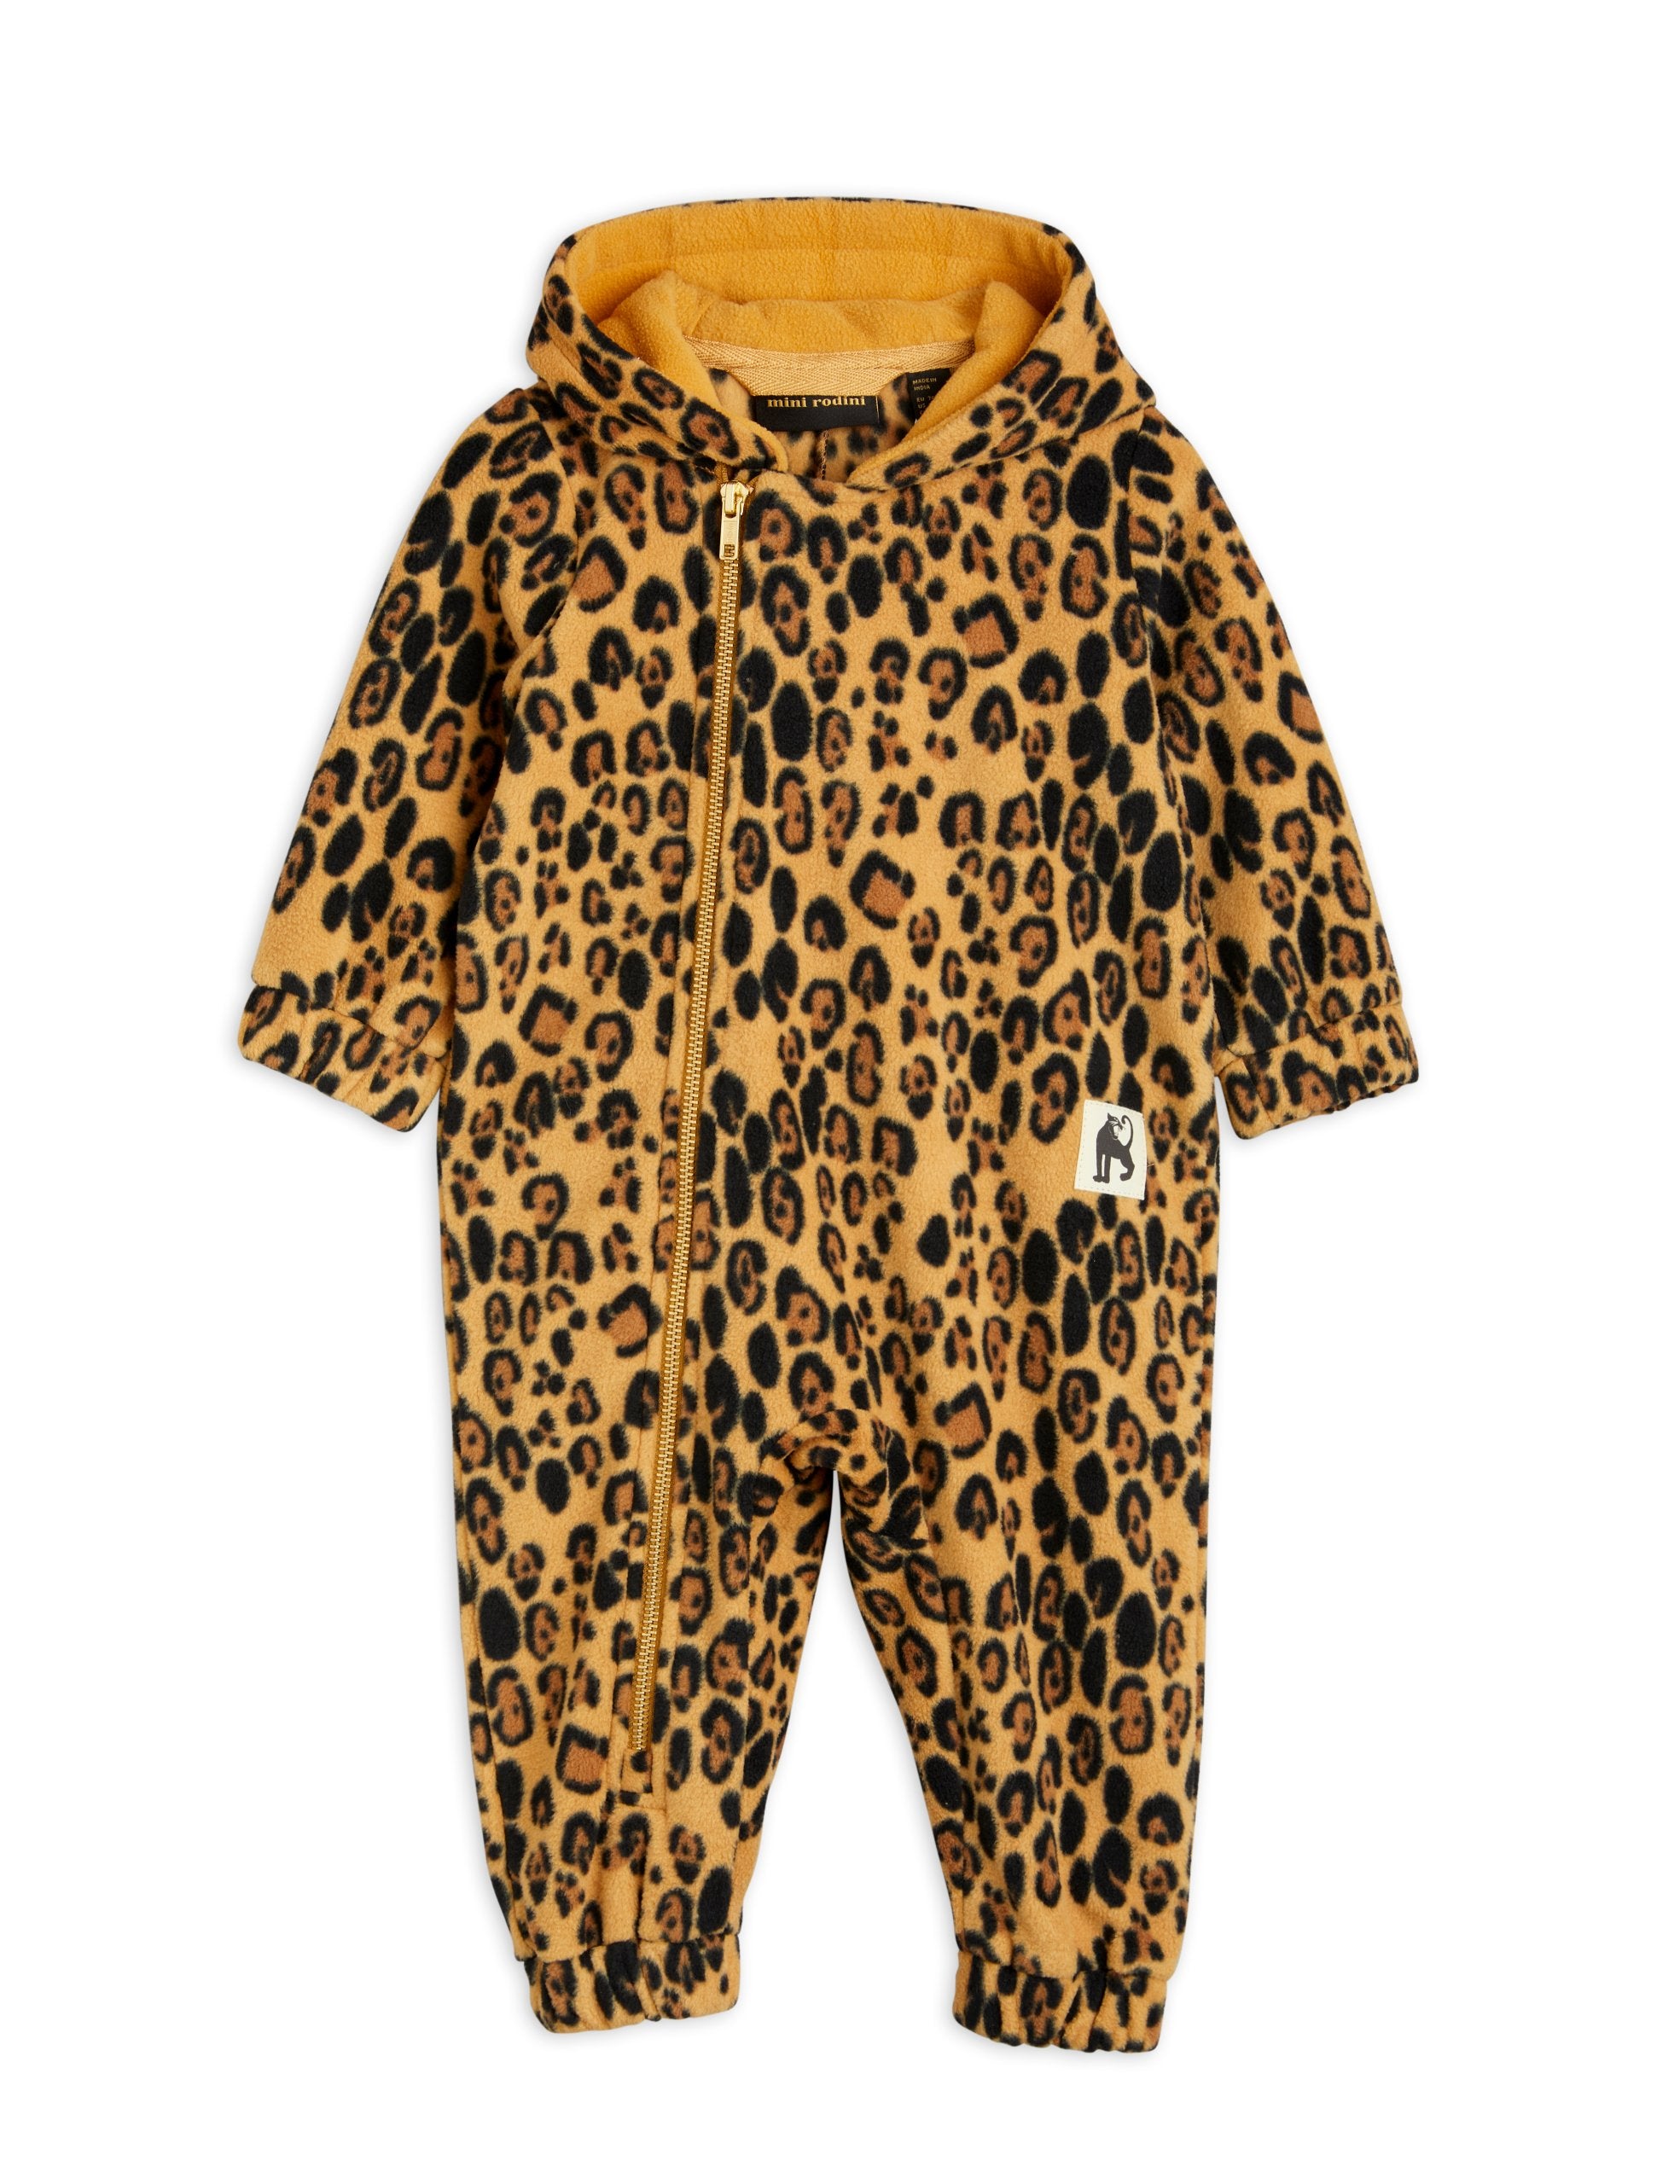 Leopard fleece onesie